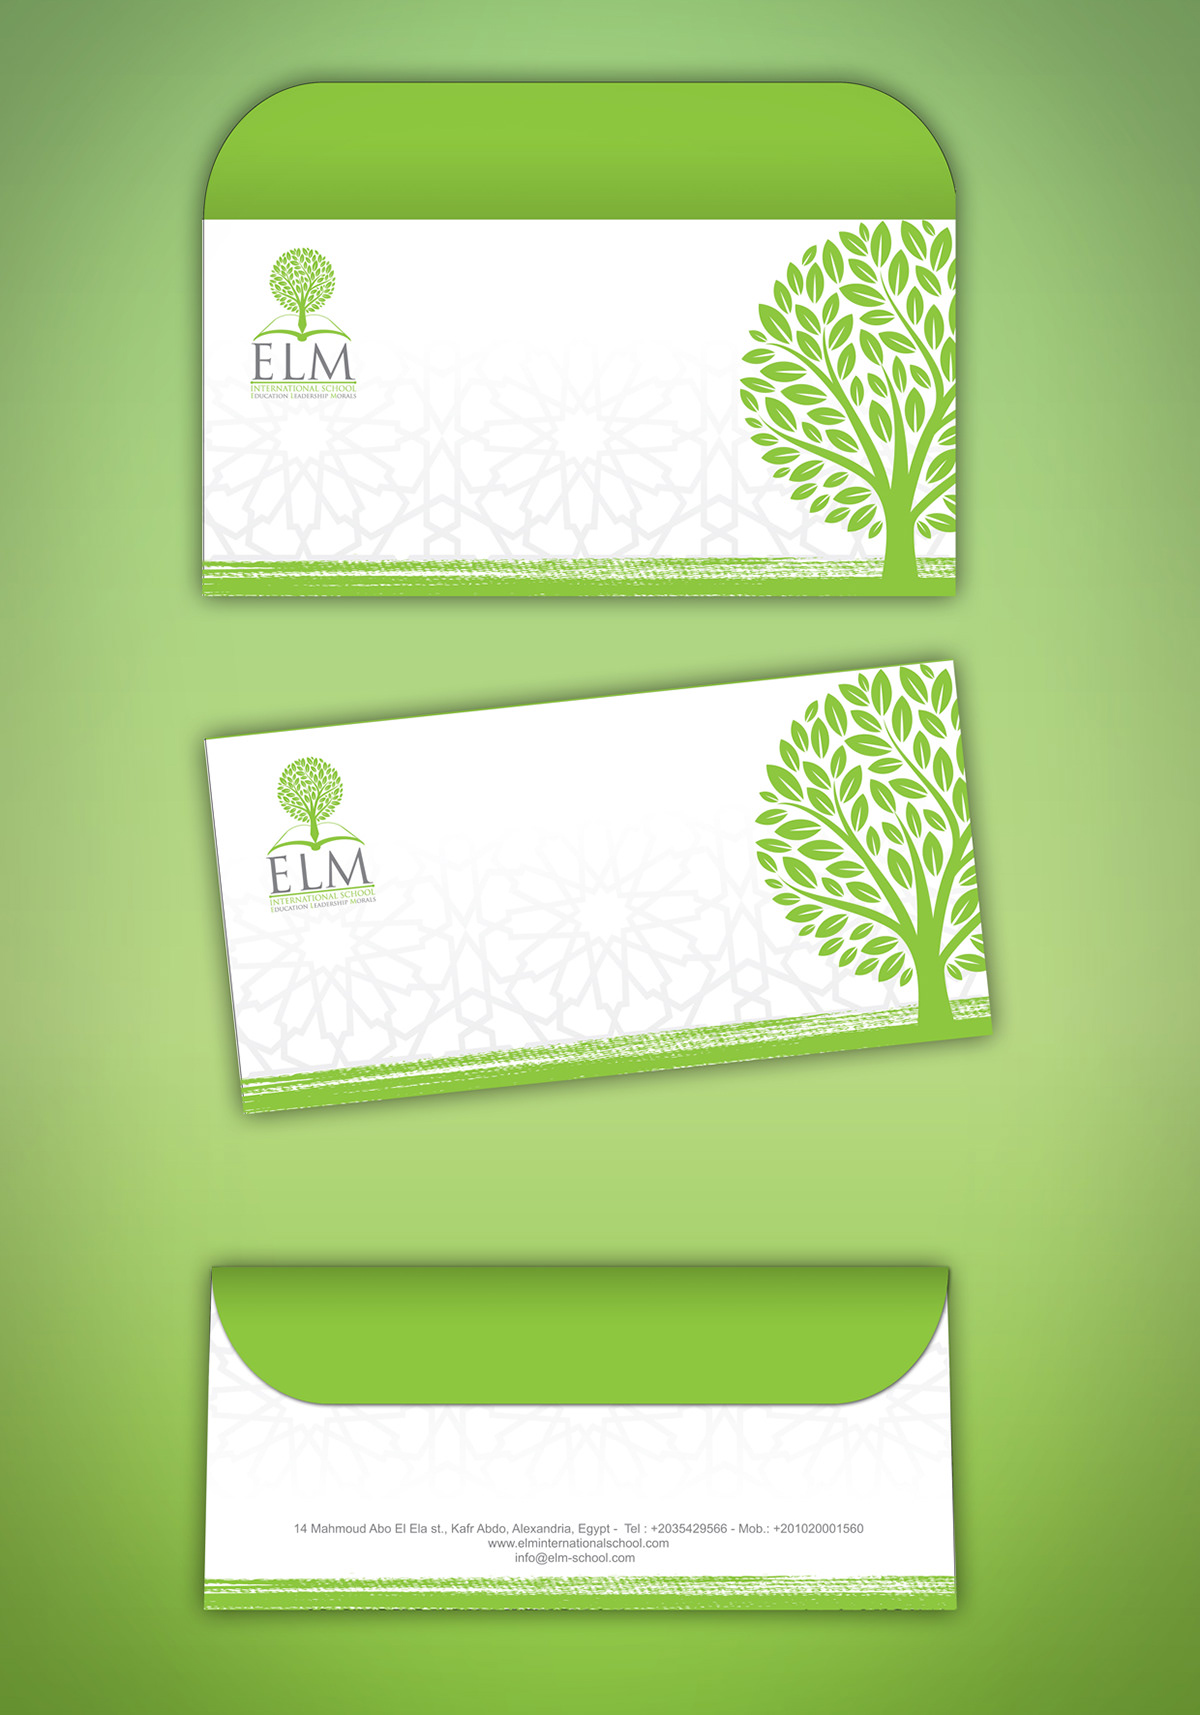 creative design concept identity brand cards letterhead rollup